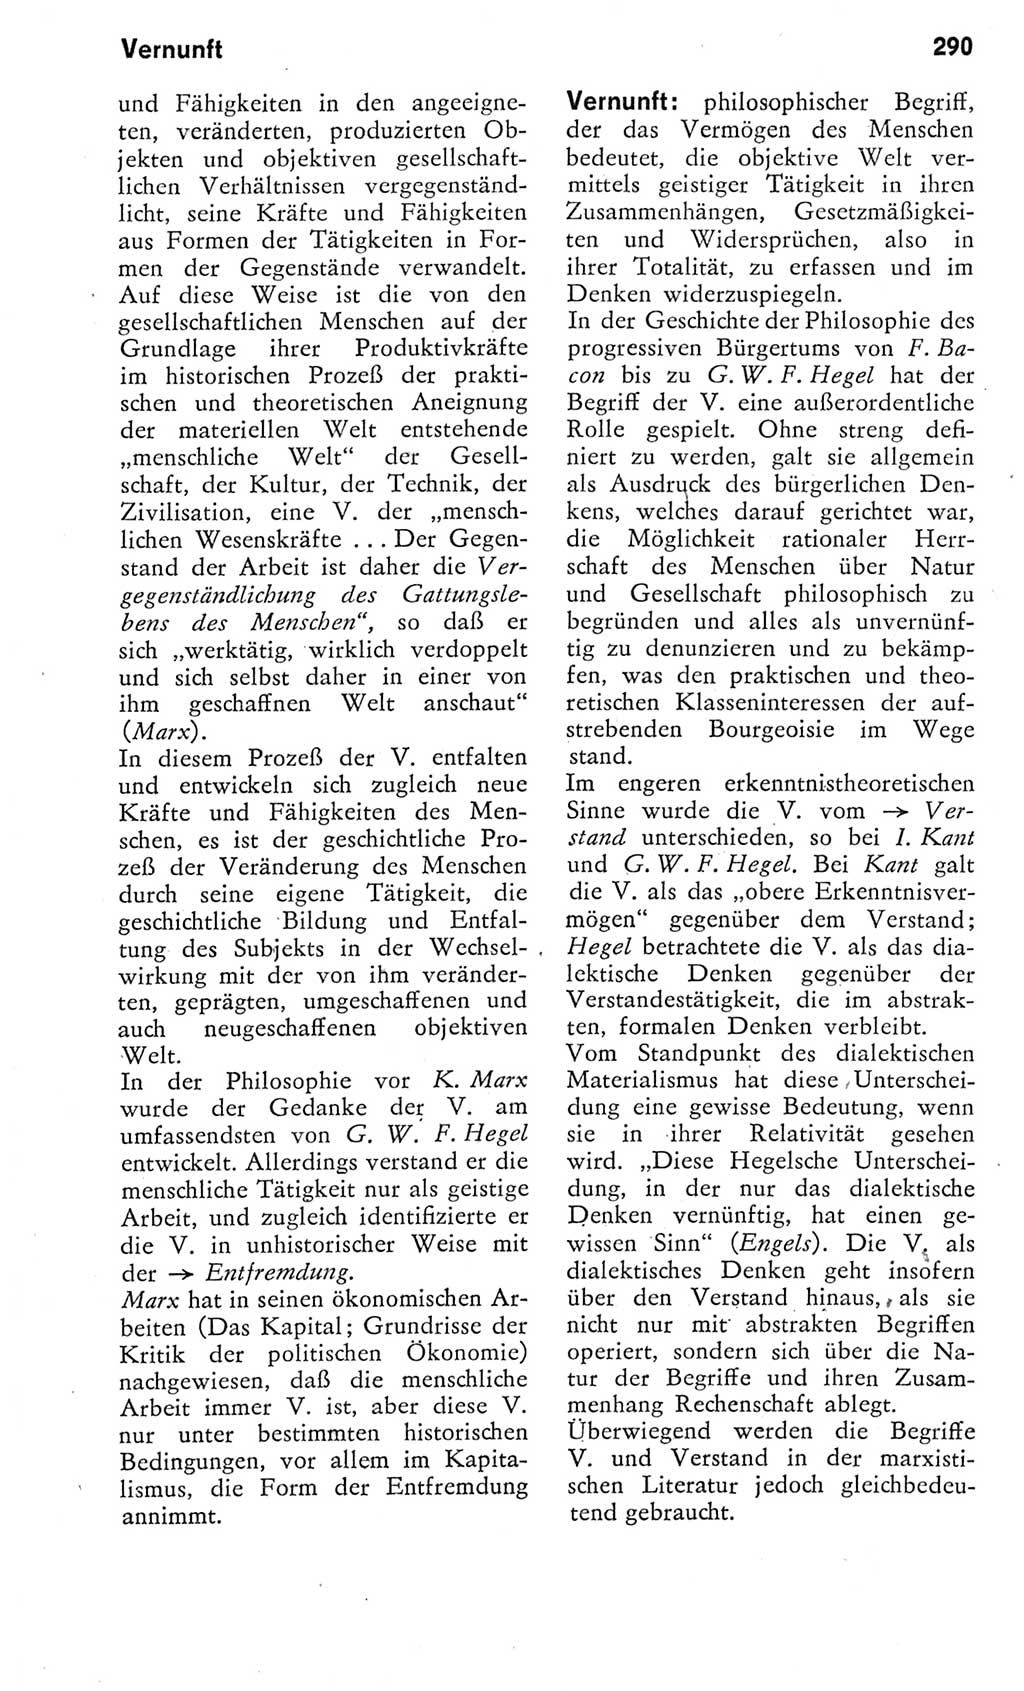 Kleines Wörterbuch der marxistisch-leninistischen Philosophie [Deutsche Demokratische Republik (DDR)] 1975, Seite 290 (Kl. Wb. ML Phil. DDR 1975, S. 290)